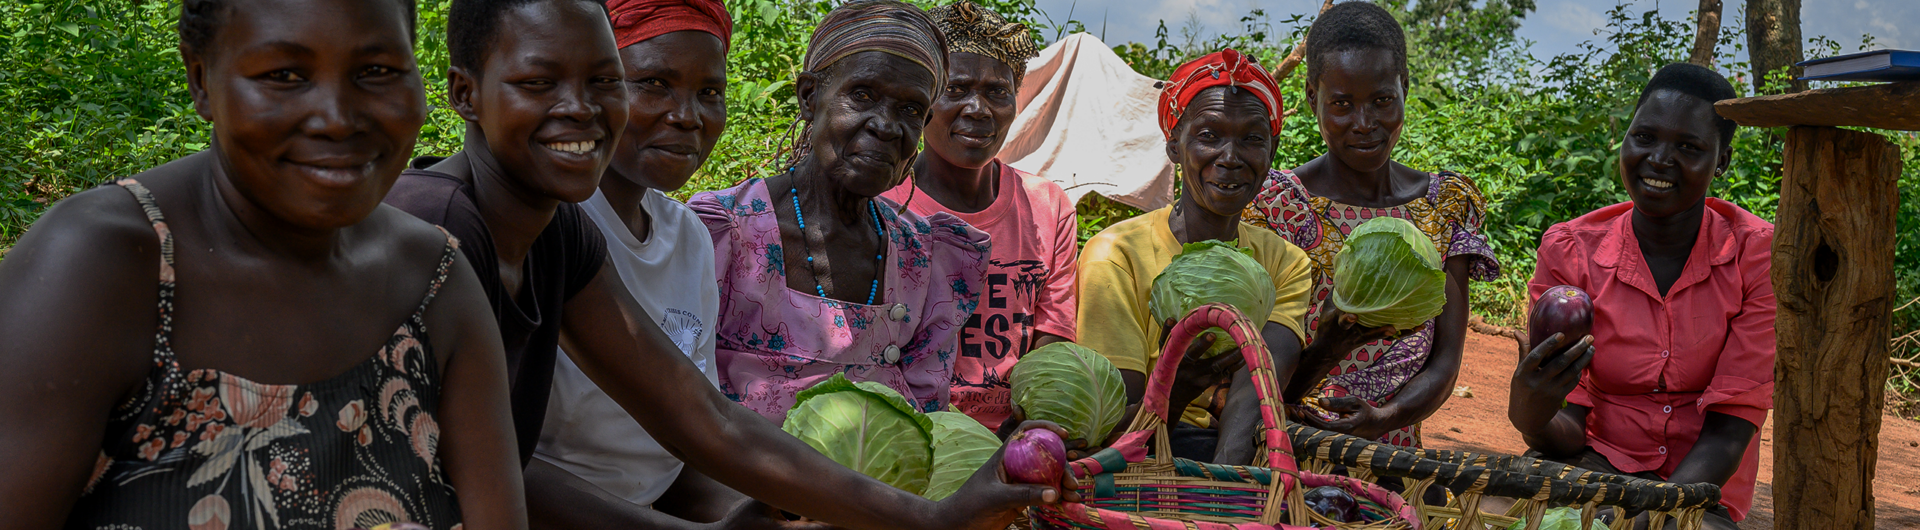 Female farmers in Uganda.